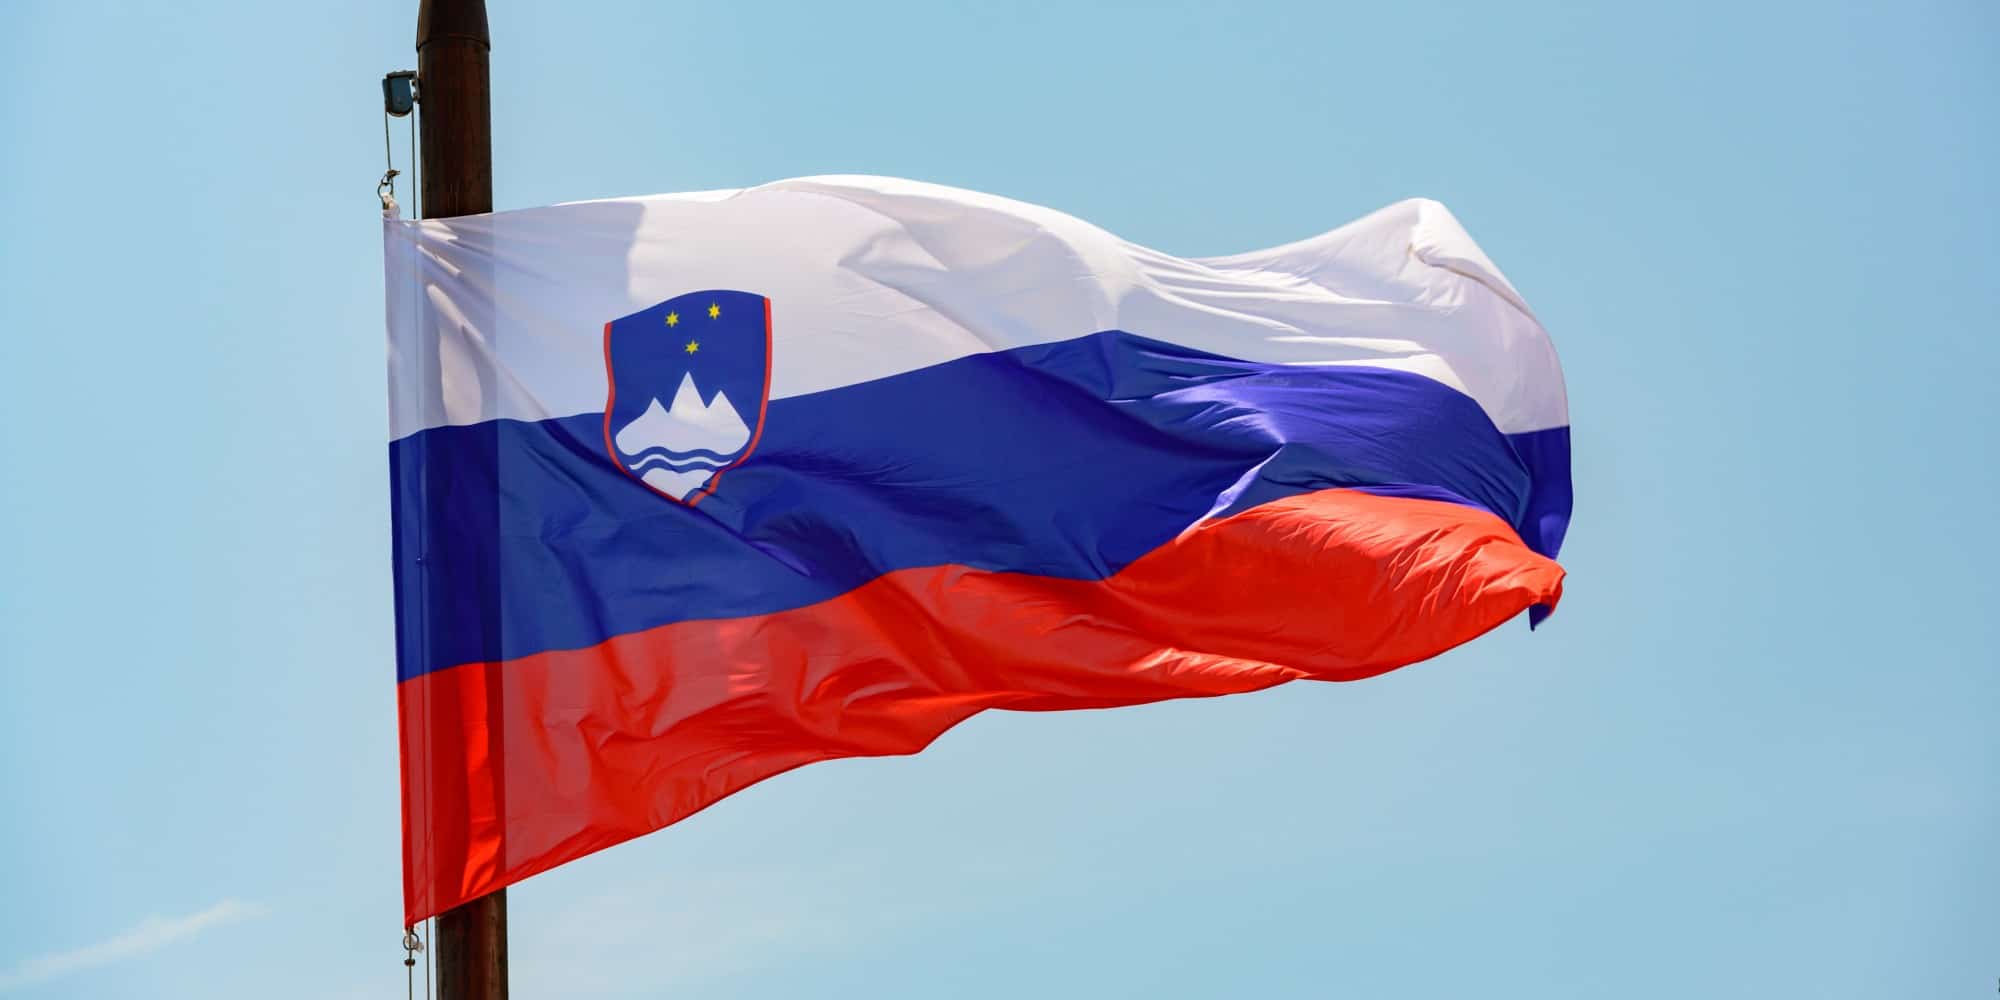 Η σημαία της Σλοβενίας